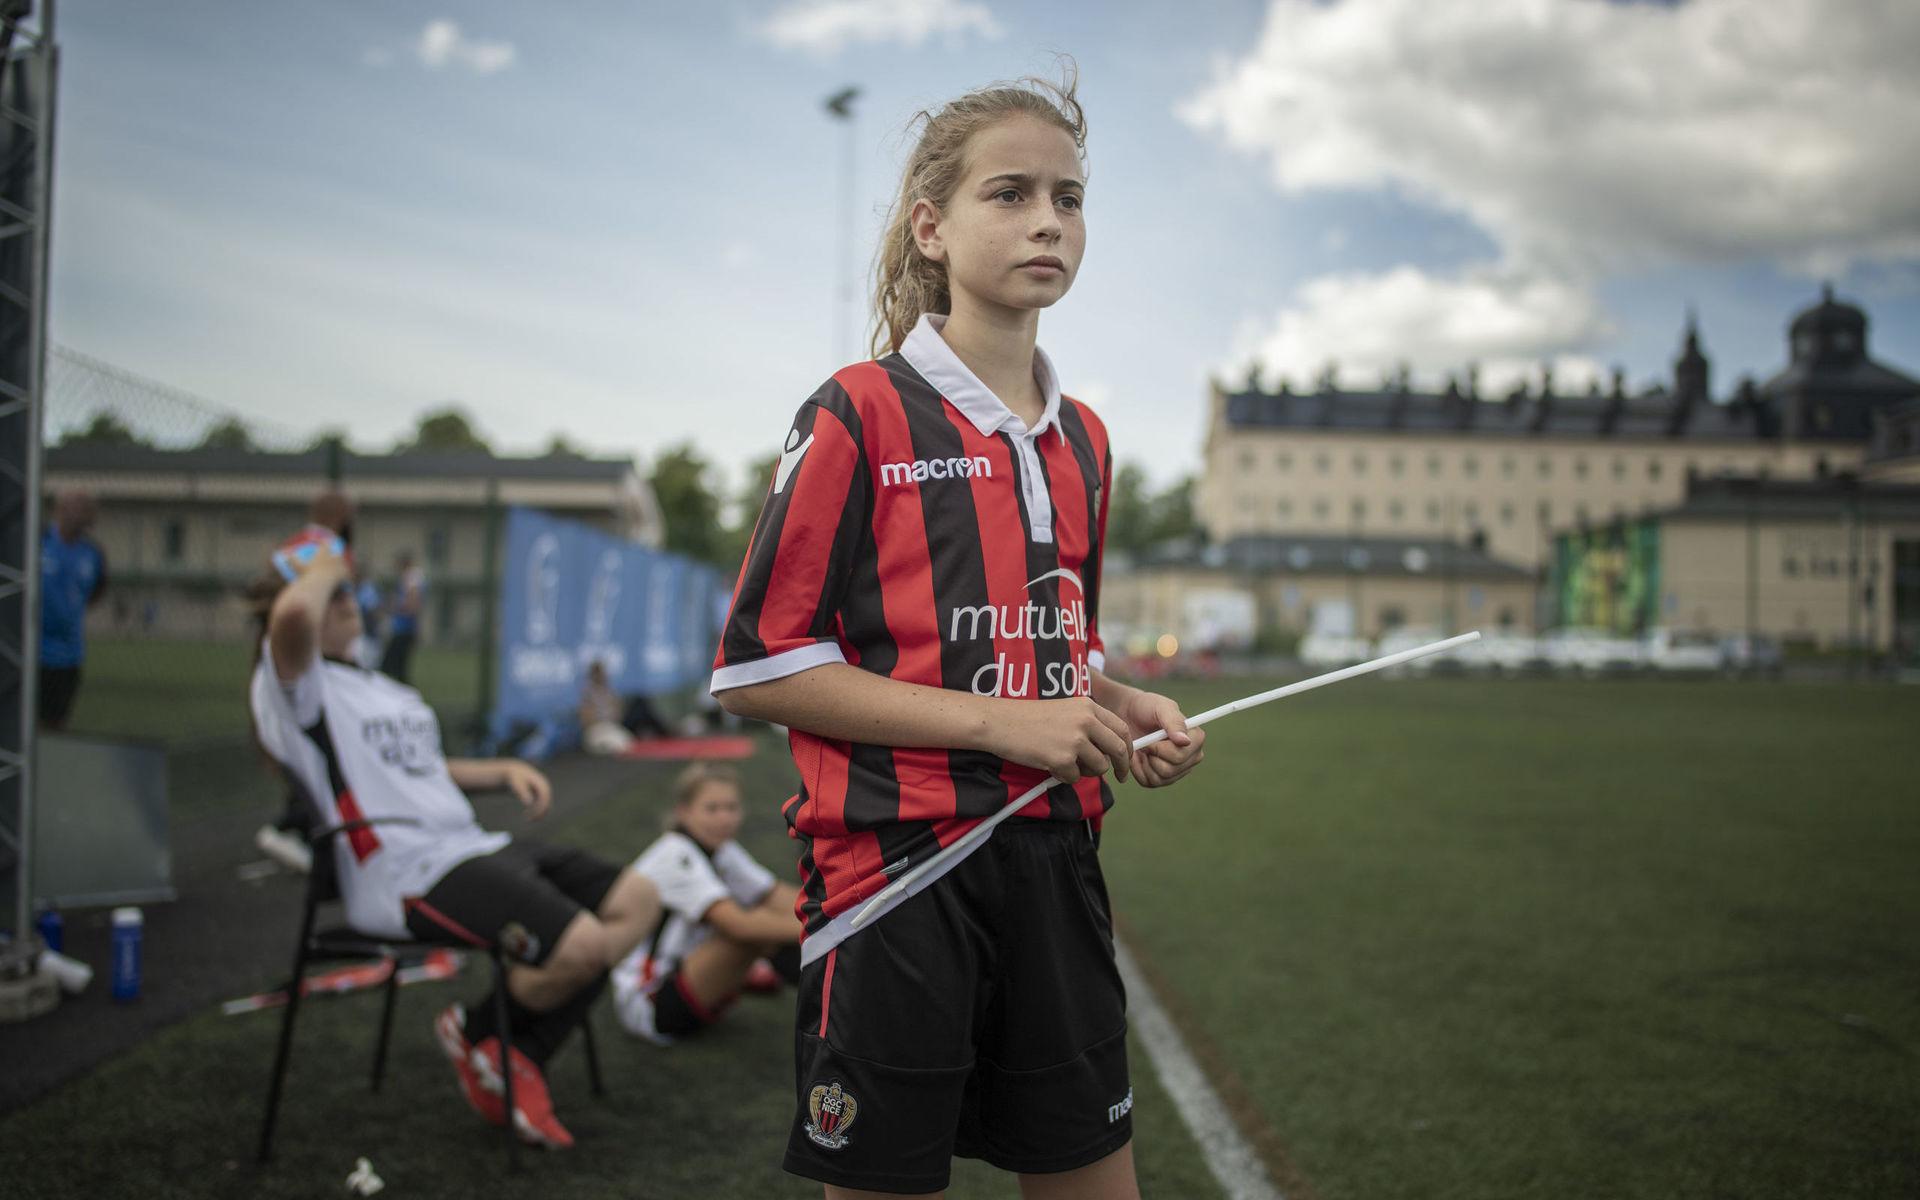 13-åriga Nina Rebel, med den franska flaggan, stöttar laget från sidan.